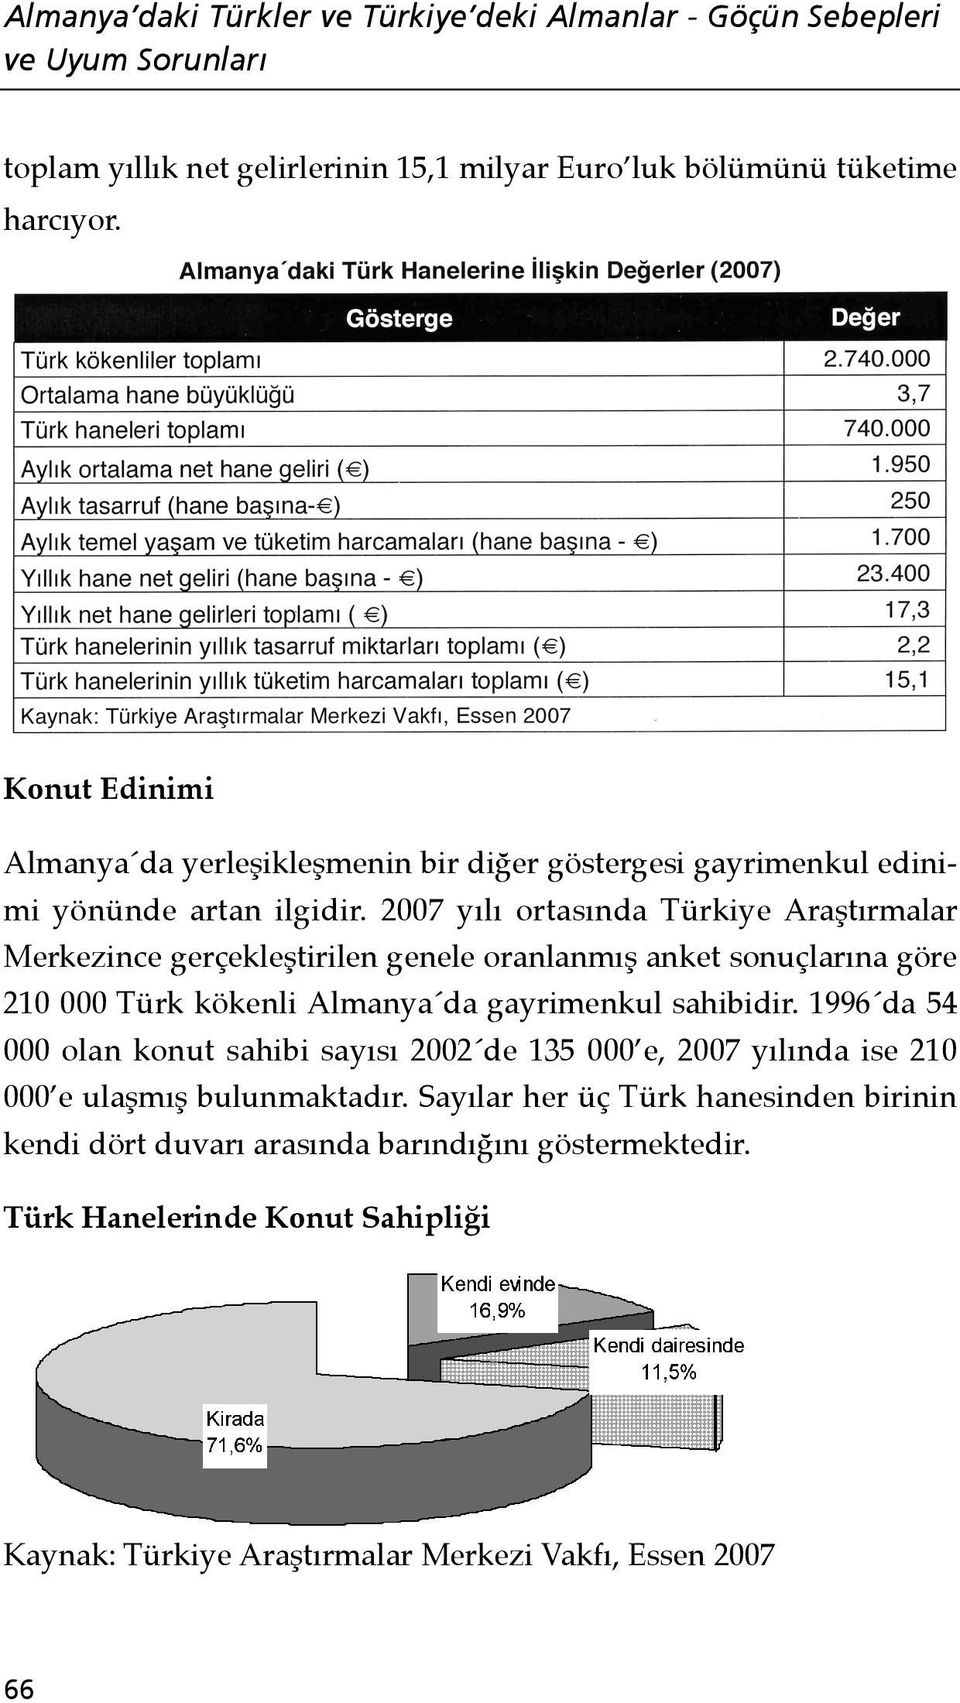 2007 yılı ortasında Türkiye Araştırmalar Merkezince gerçekleştirilen genele oranlanmış anket sonuçlarına göre 210 000 Türk kökenli Almanya da gayrimenkul sahibidir.